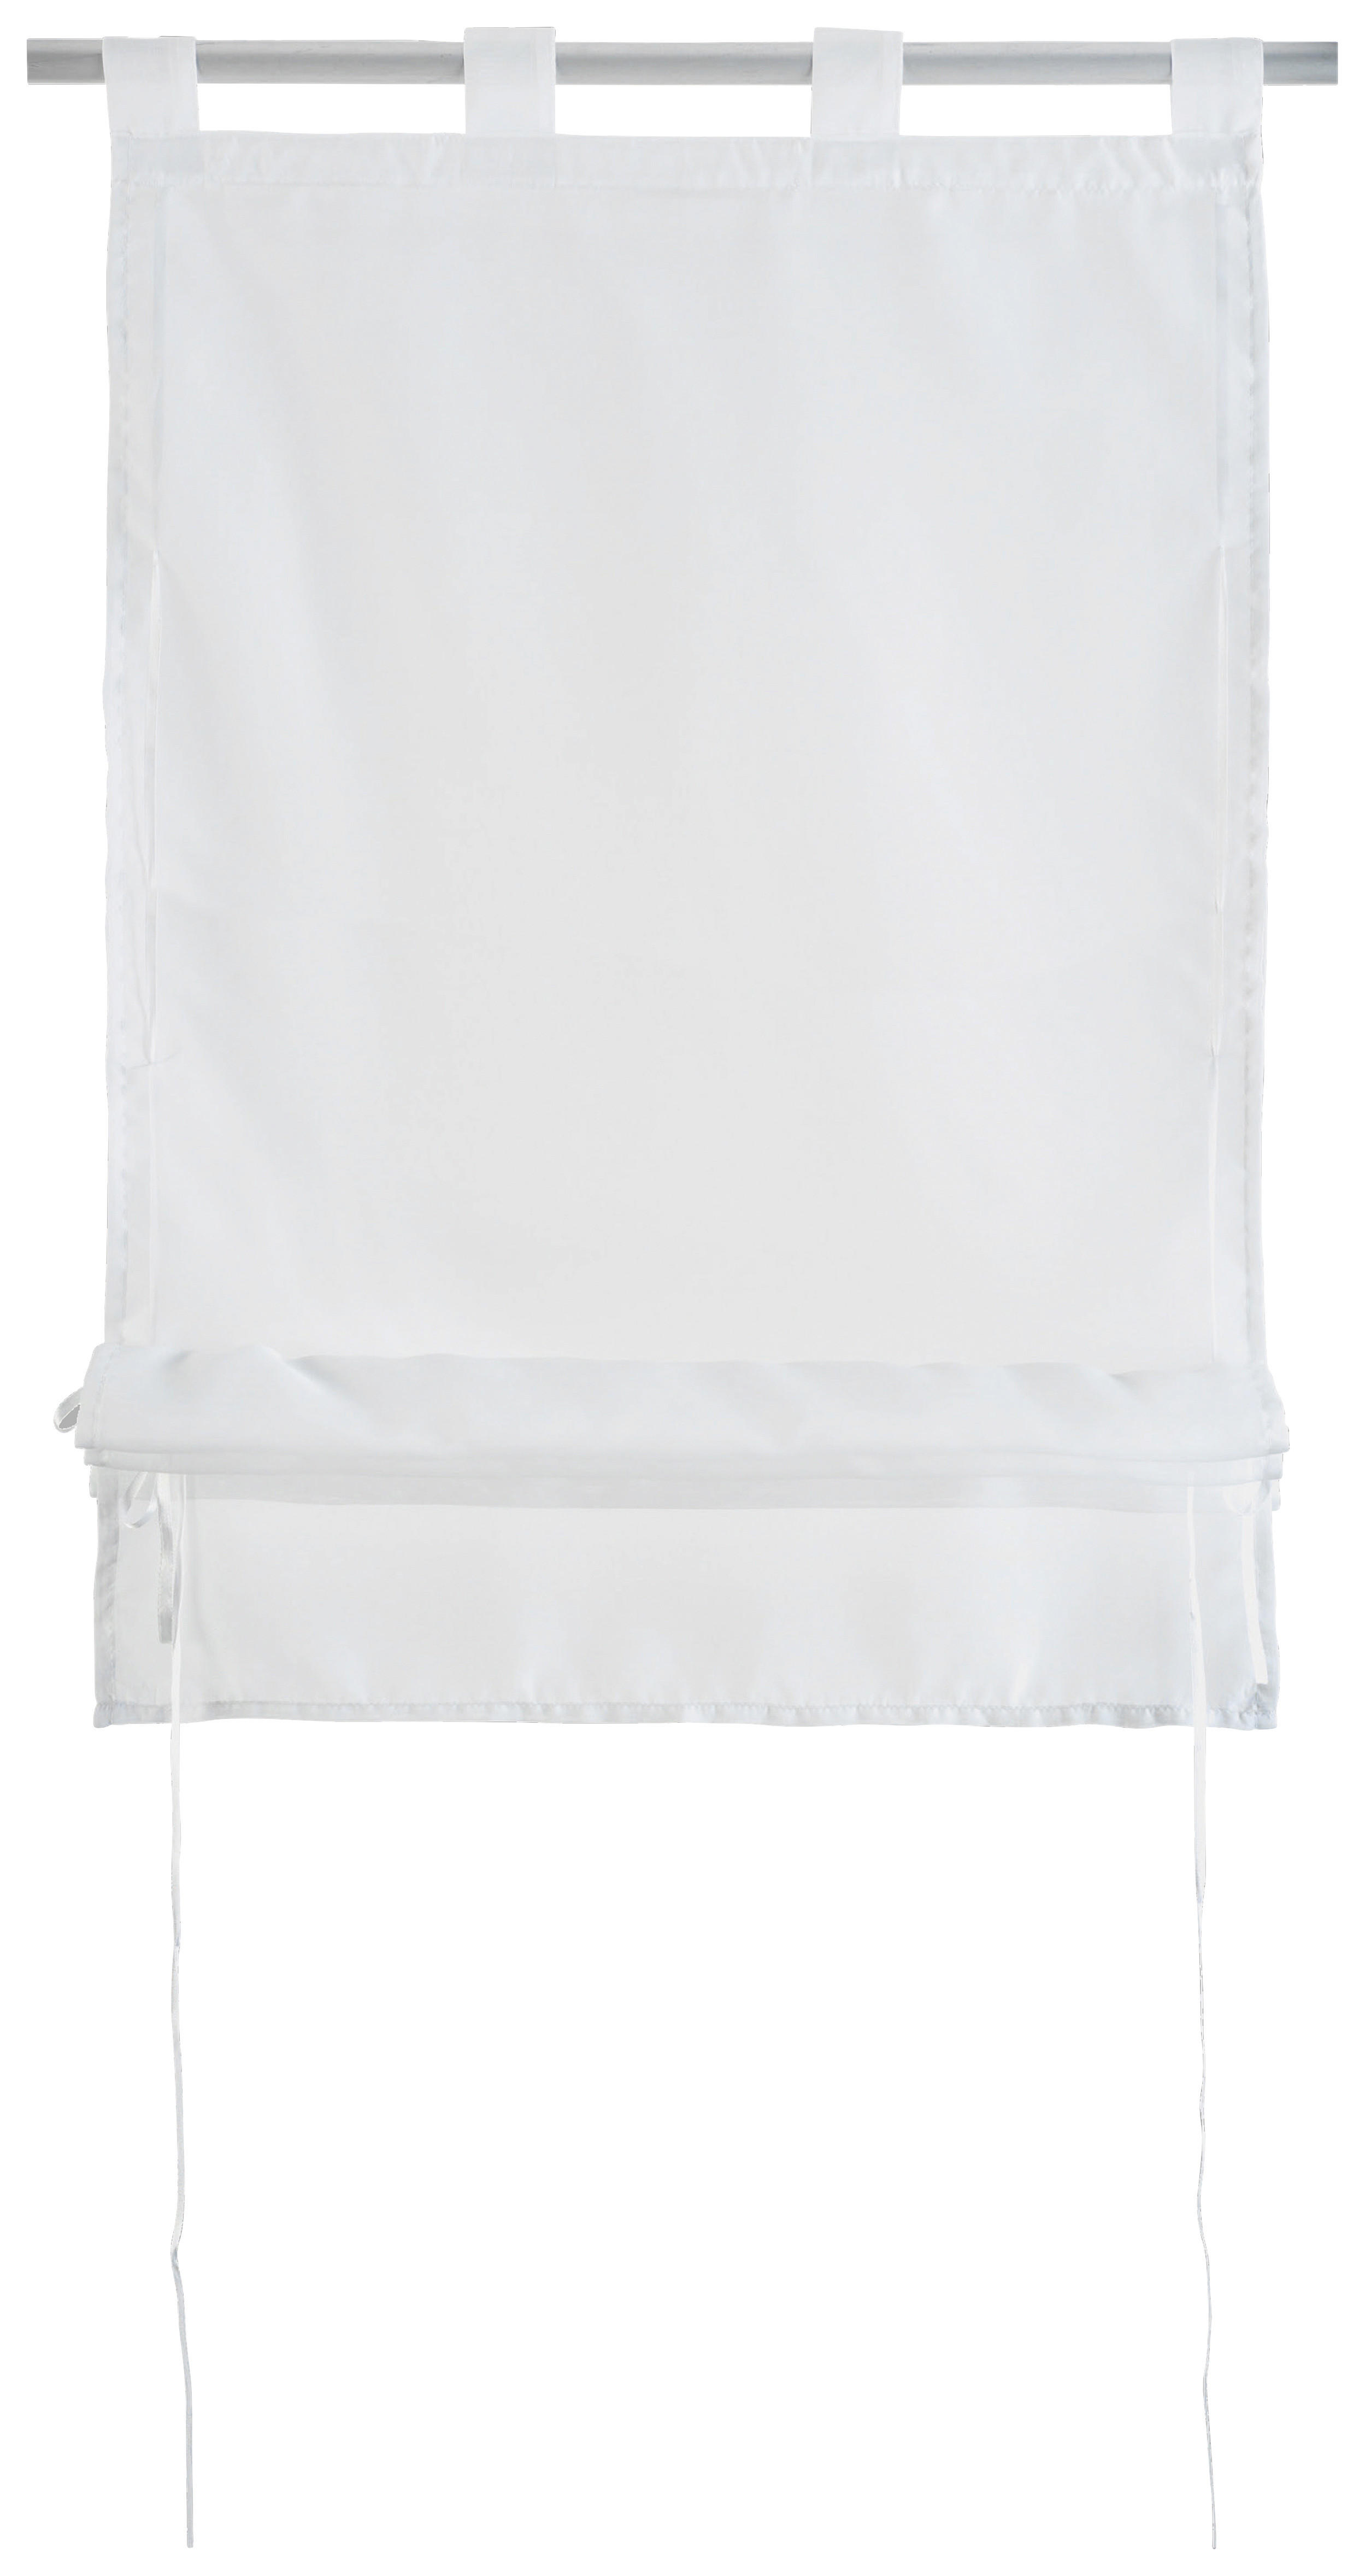 Bändchenrollo Nouveau weiß B/L: ca. 60x140 cm Nouveau - weiß (60,00/140,00cm)